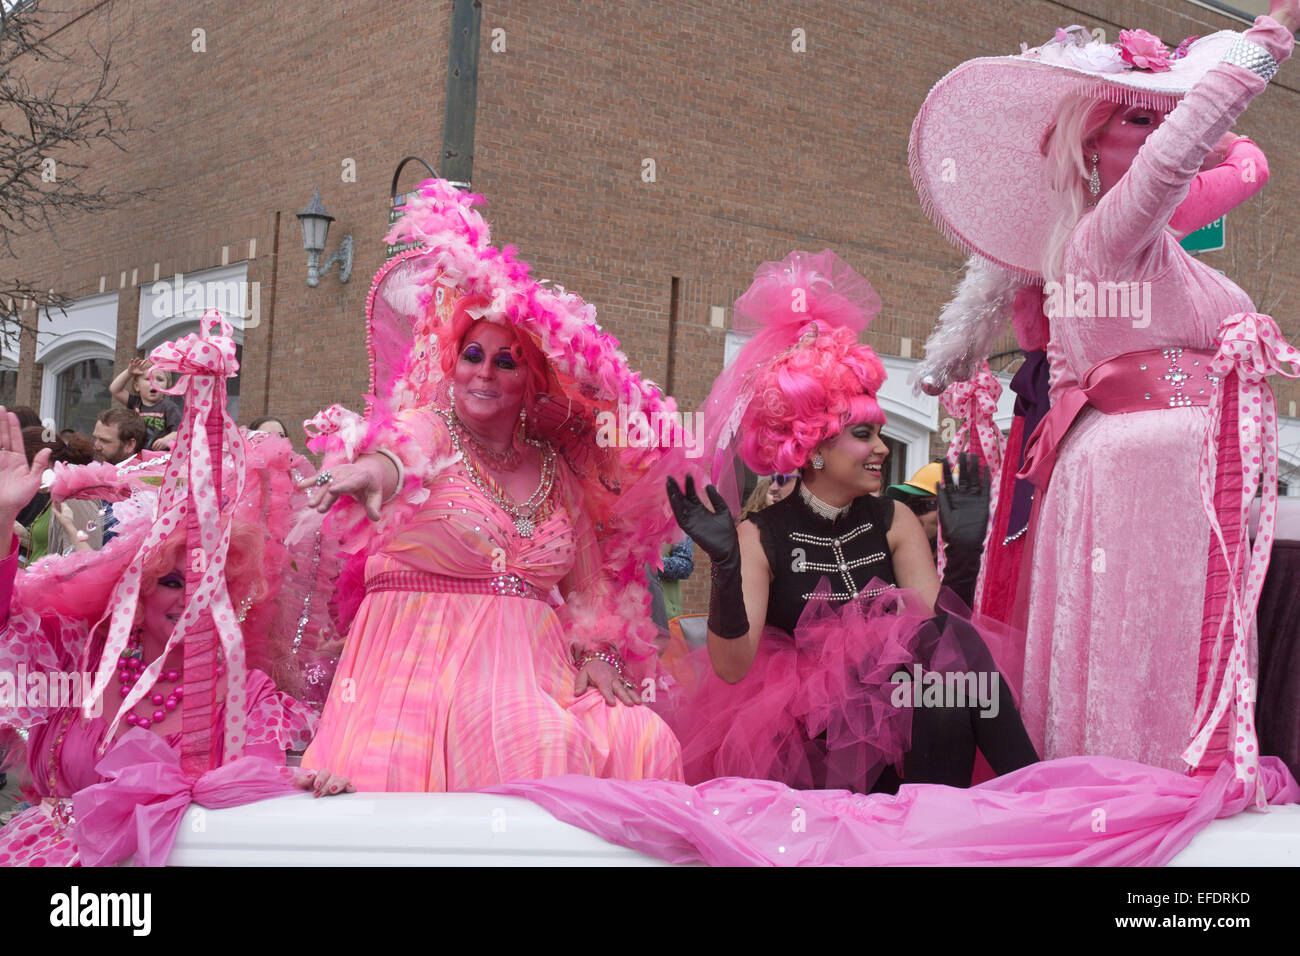 Rüschen kostümierte Damen in Rosa mit rosa Haut fahren und winken den Zuschauern während der Asheville, NC Karneval Parade Stockfoto